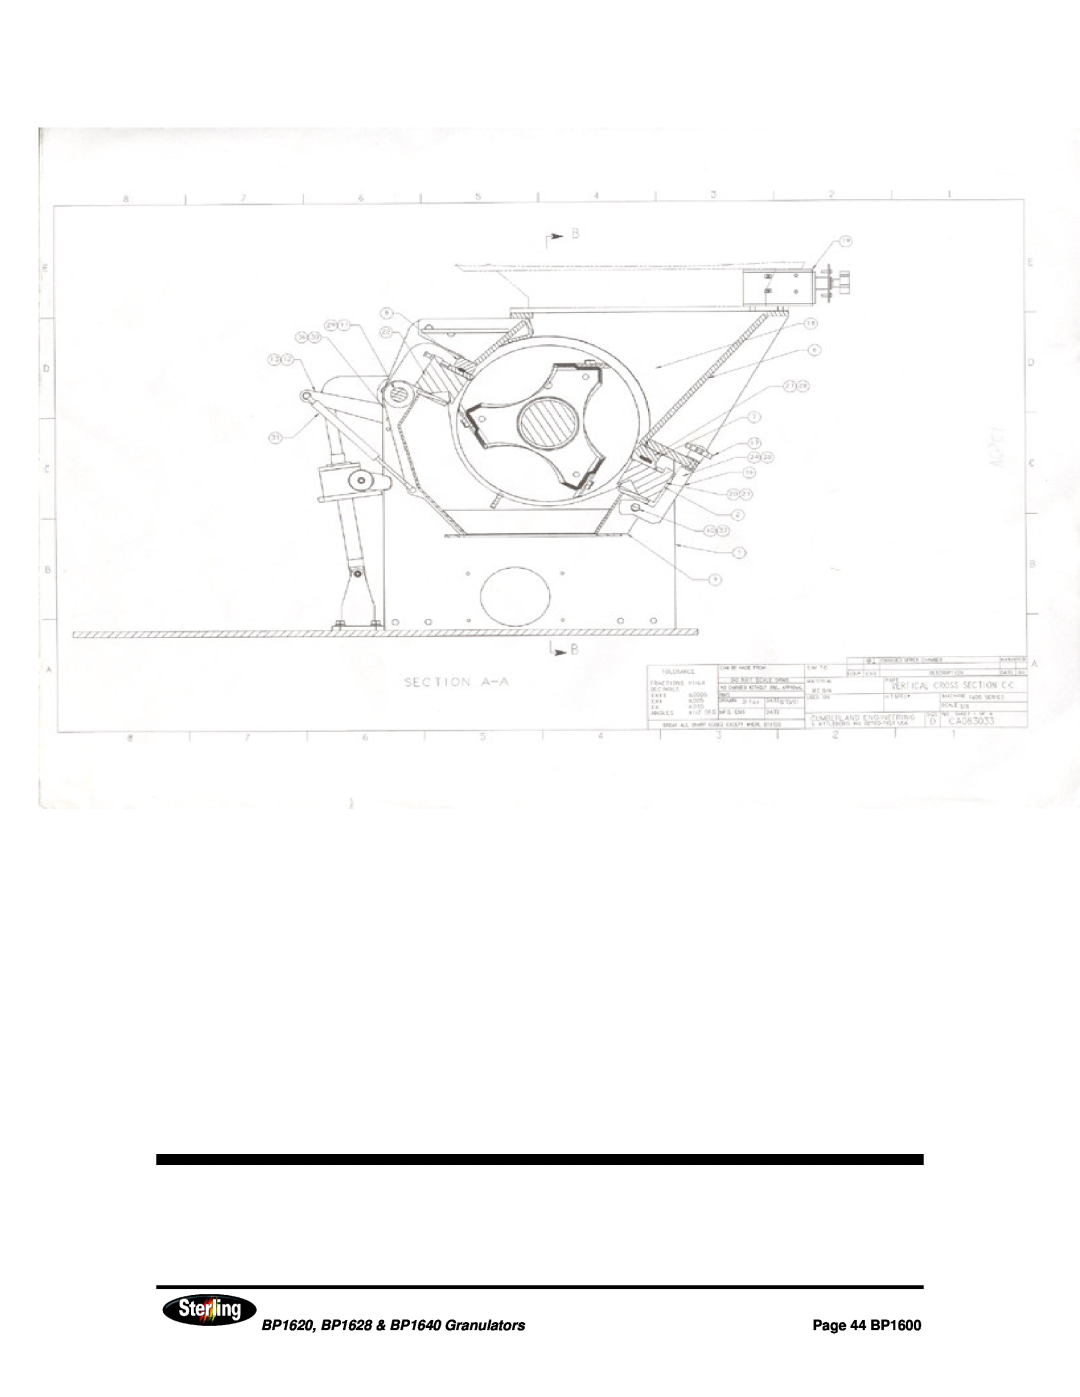 Sterling installation manual BP1620, BP1628 & BP1640 Granulators, Page 44 BP1600 